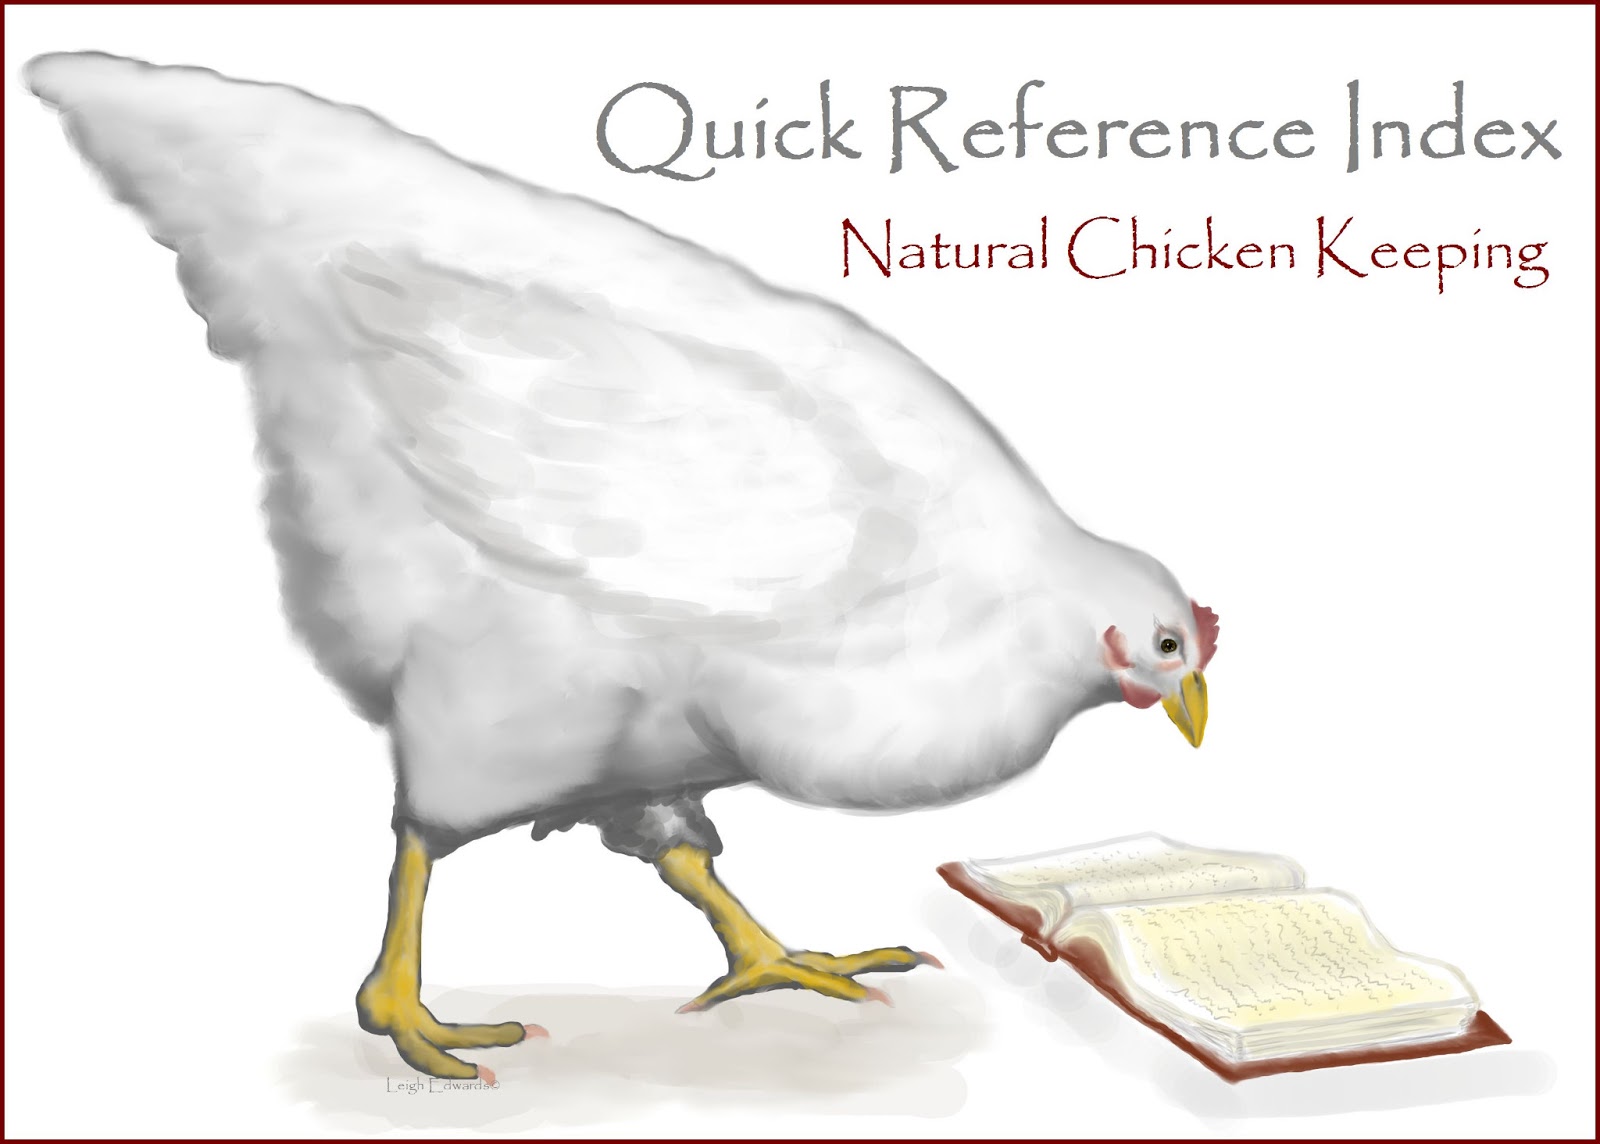 Chicken+Research+Index.jpg